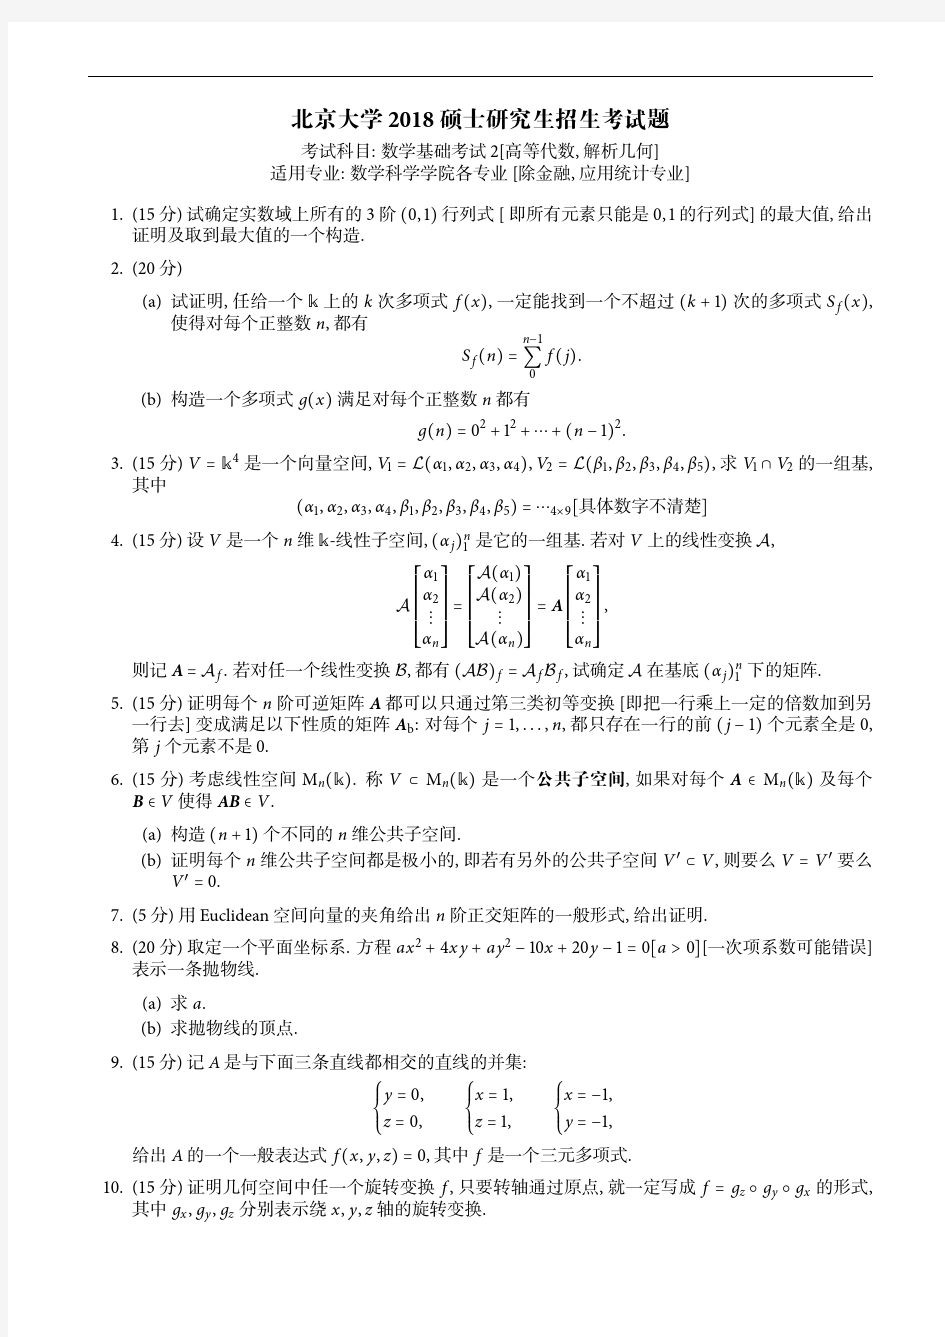 北京大学数学专业历年考研试题数学分析1987;1996-2002;2005-2018年